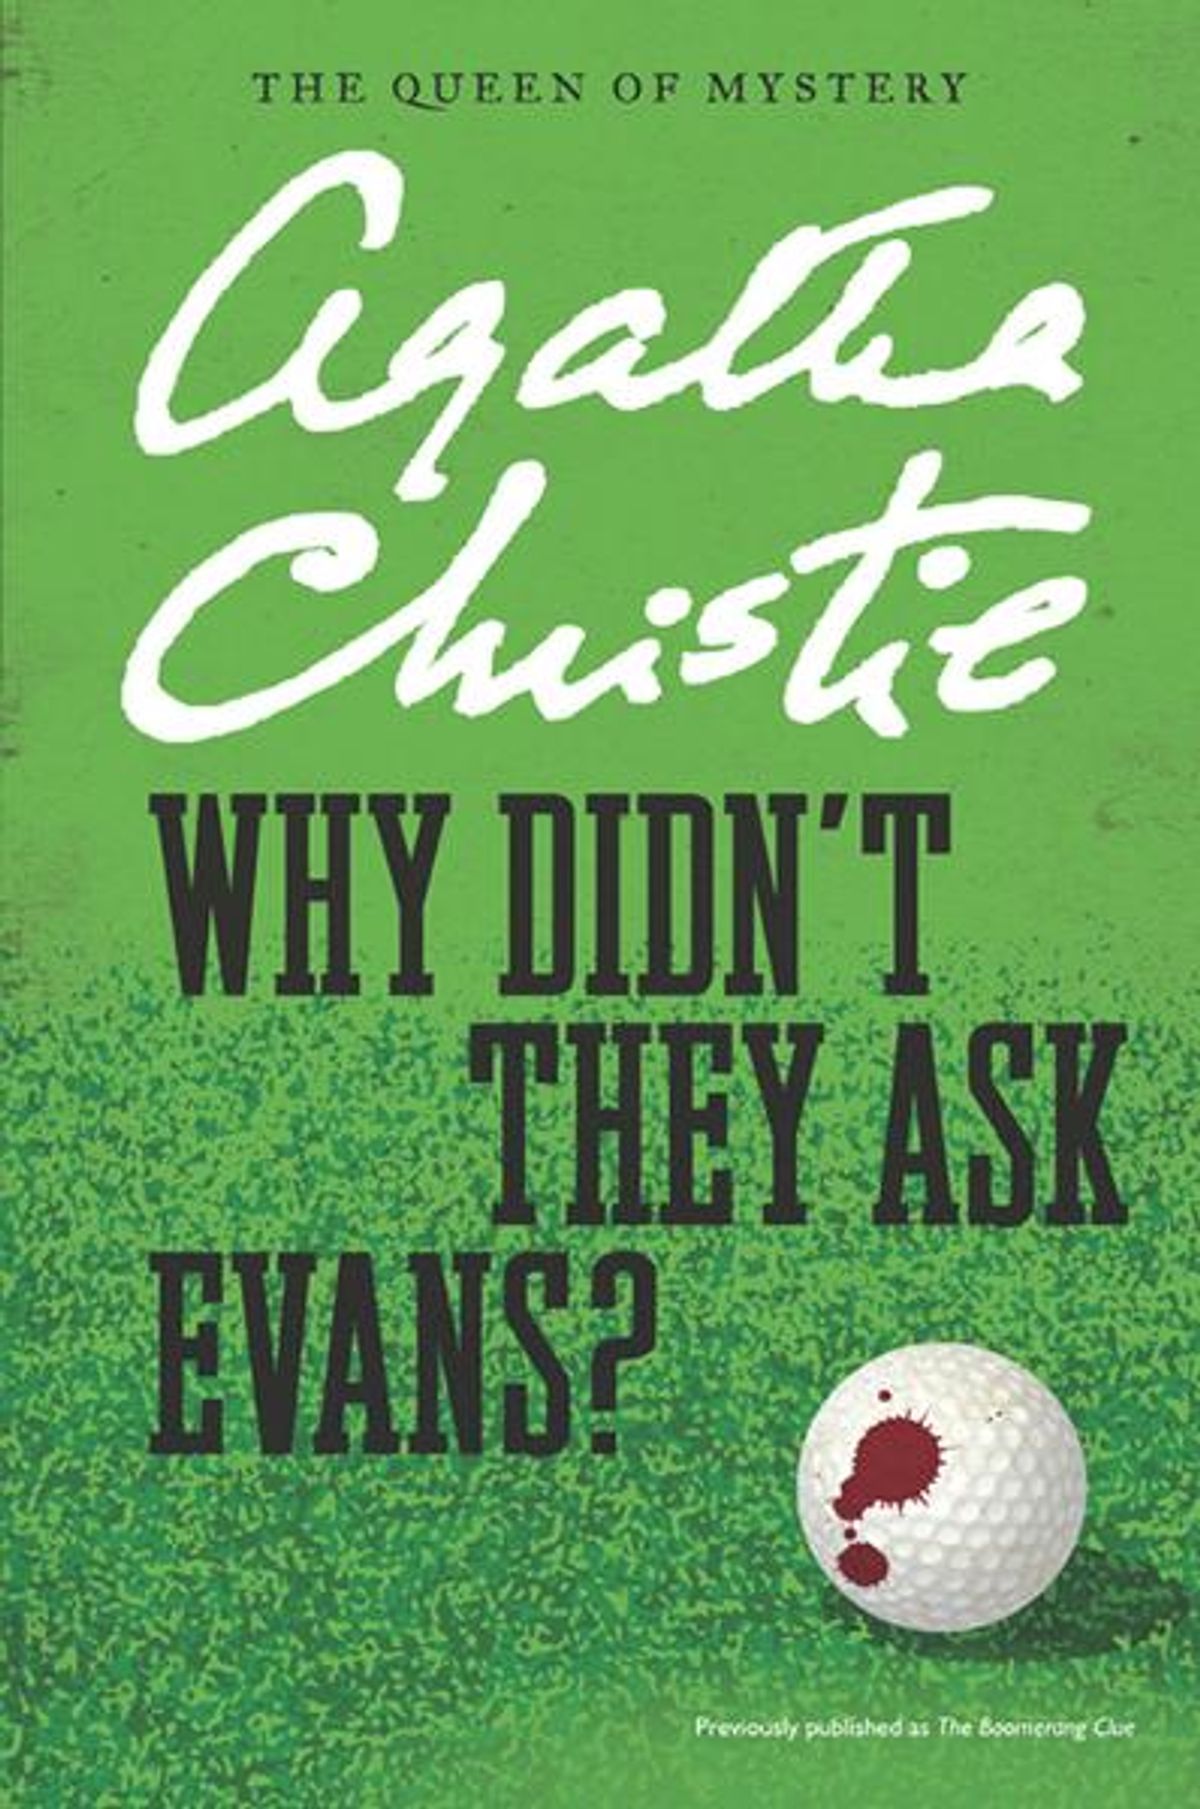 Agatha Christie livres 34